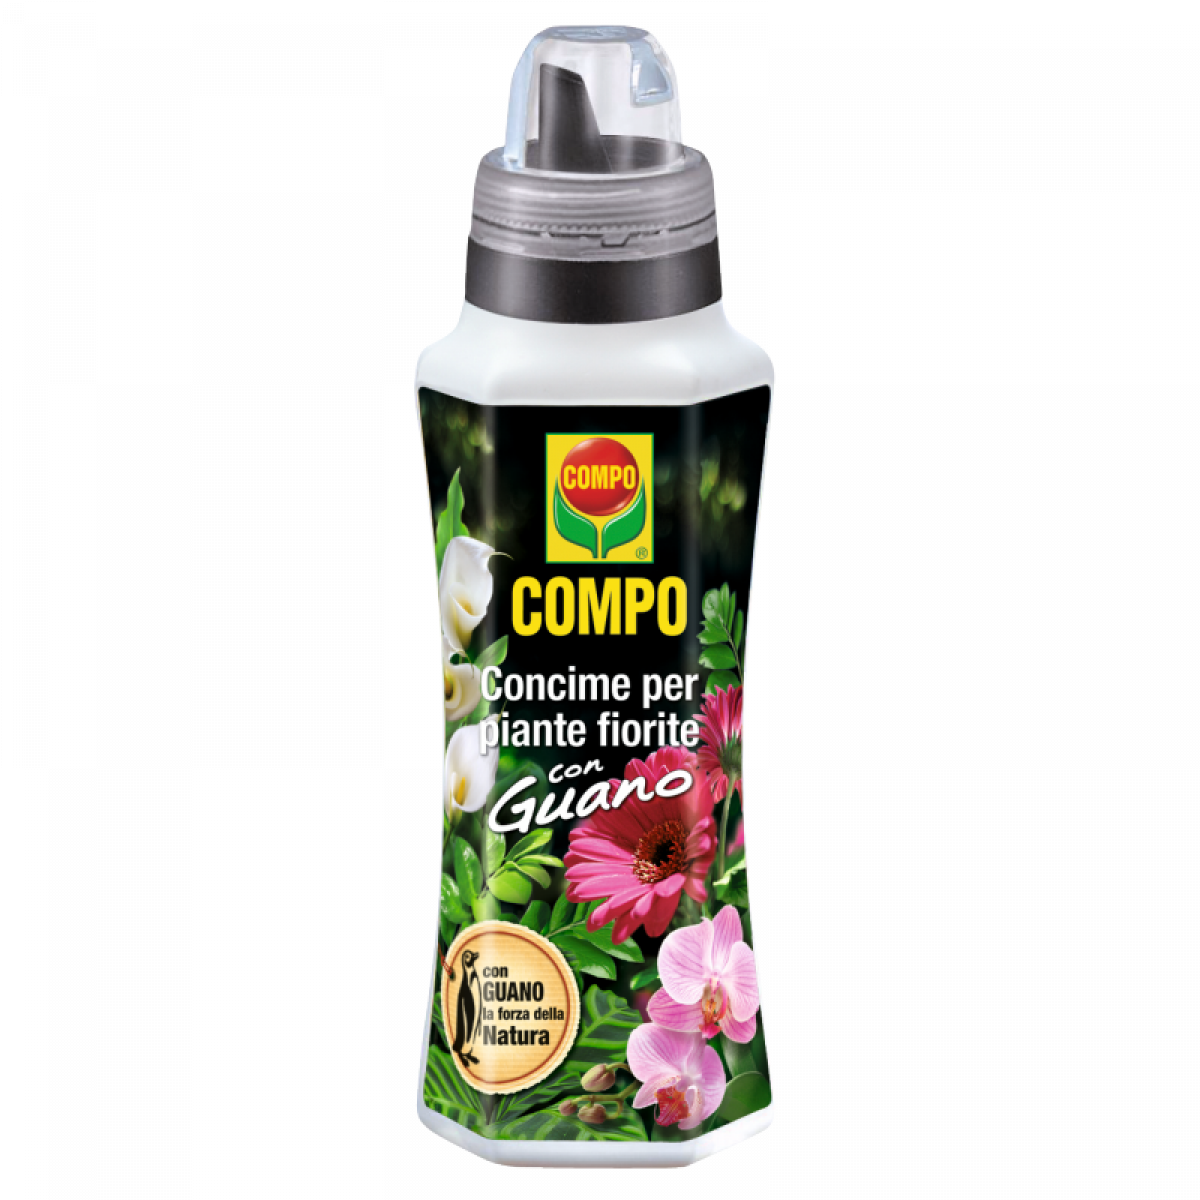 Concime per piante fiorite con guano Bio Compo - 550 ml 